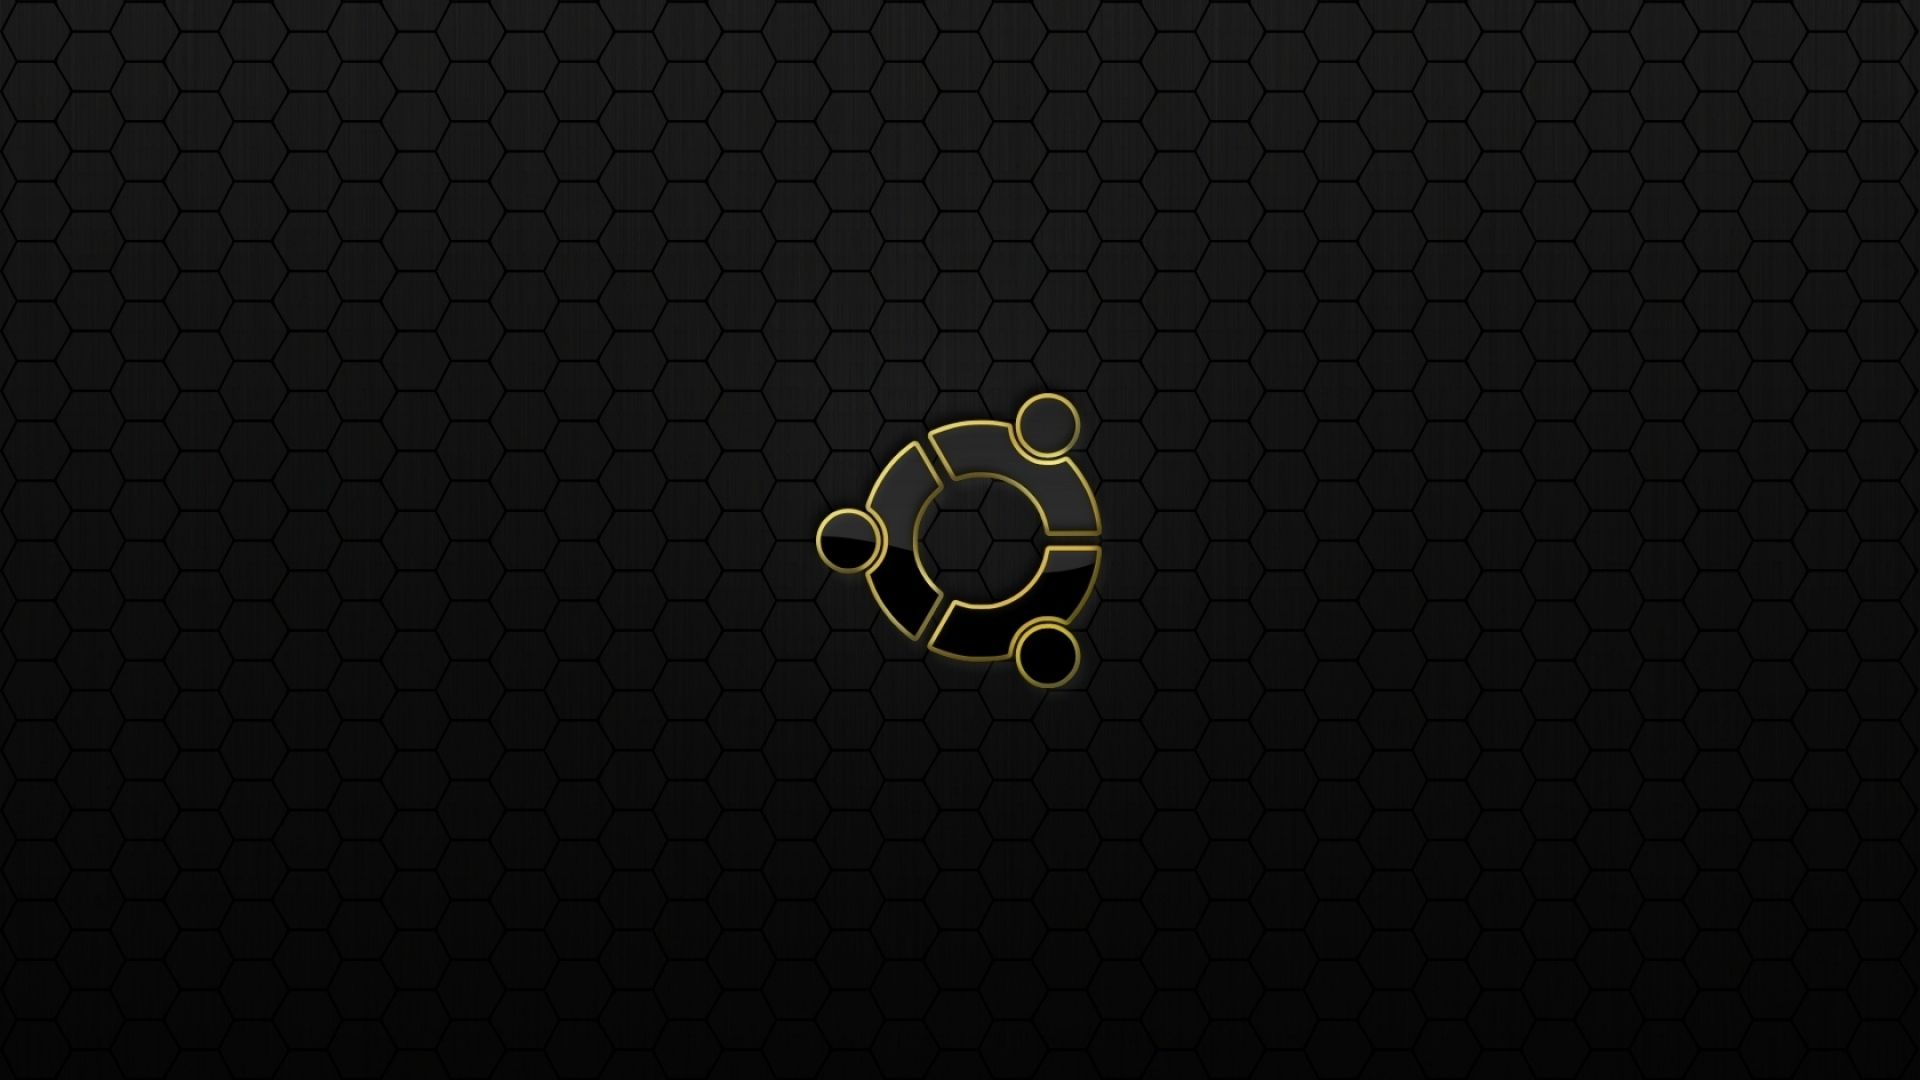 Download Wallpaper 1920x1080 Ubuntu, Os, Logo, Black, Yellow Full